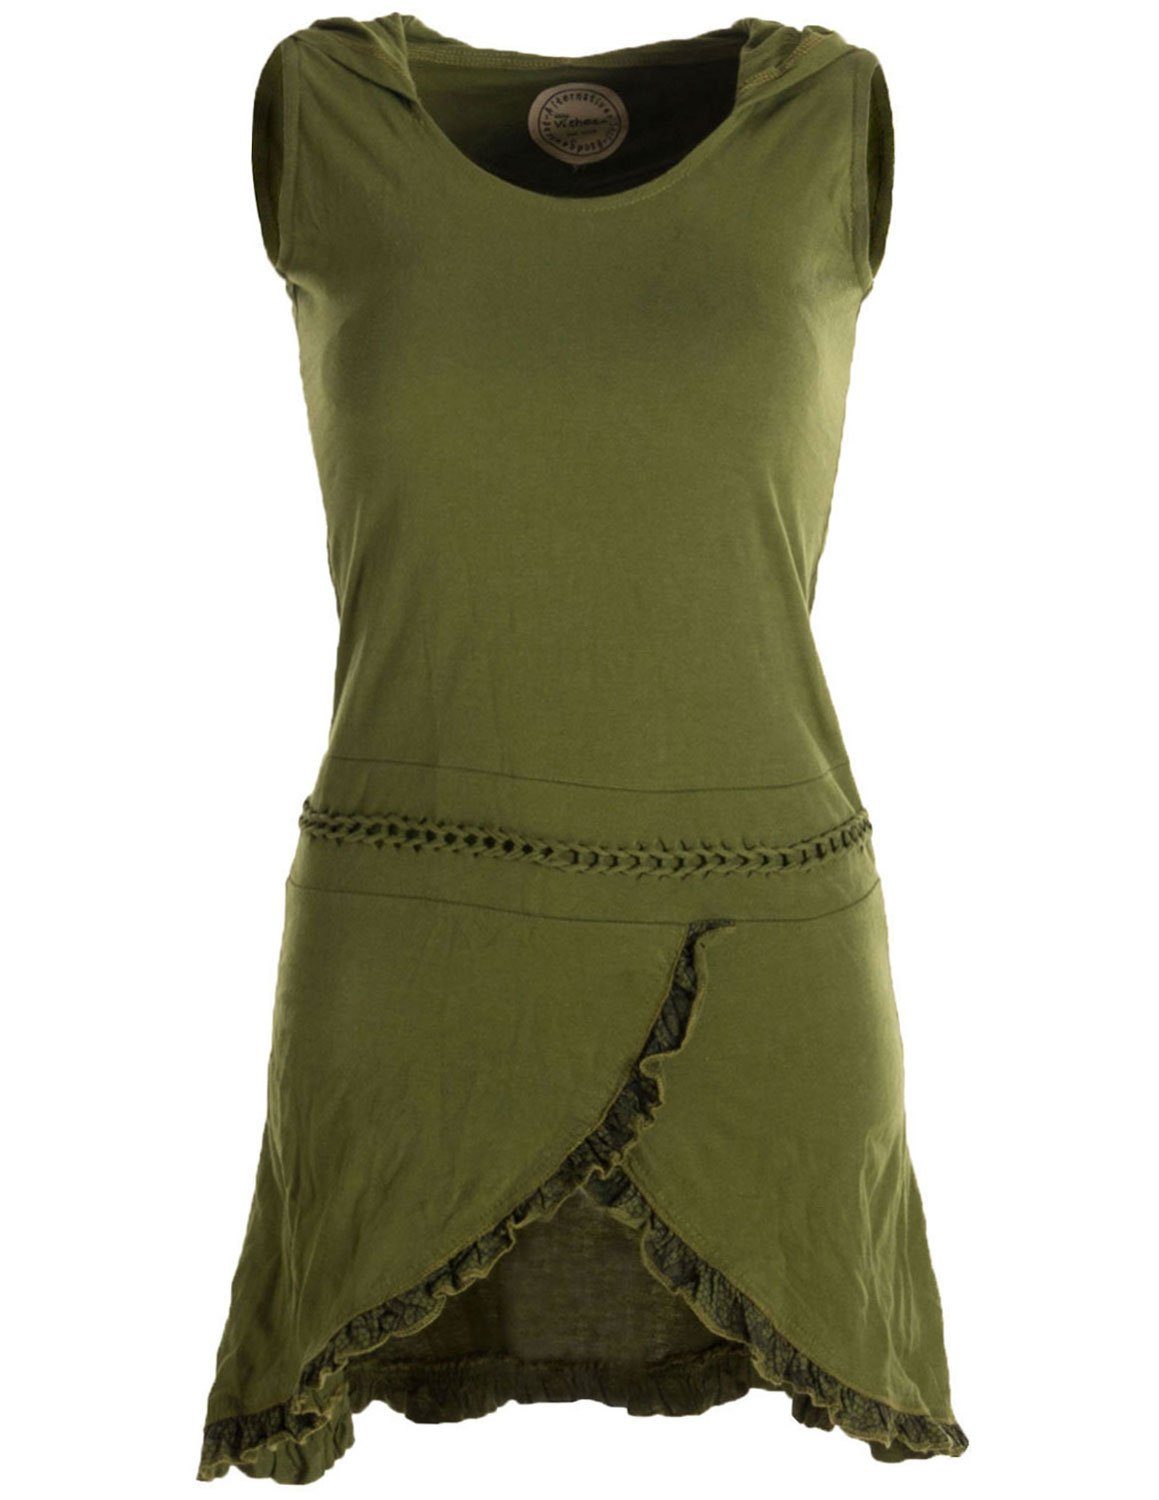 Baumwollkleid mit Zipfelkleid Zipfelkapuze Asymmetrisches Lagenlook und Rüschen, olivegrün Vishes Flechtwerk